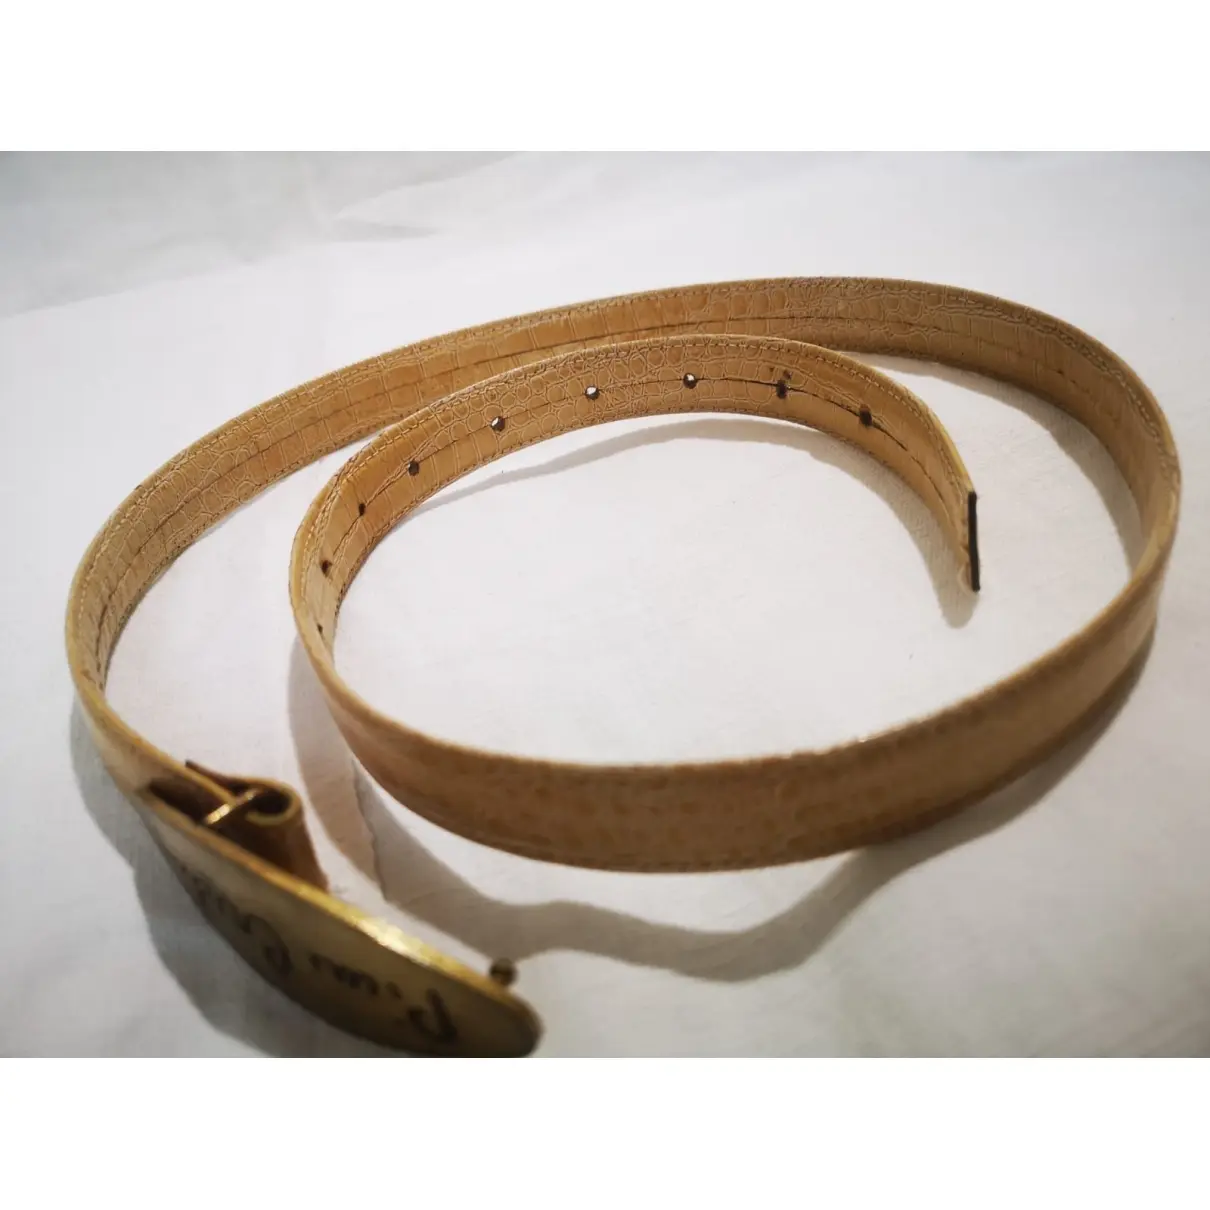 Pierre Cardin Leather belt for sale - Vintage